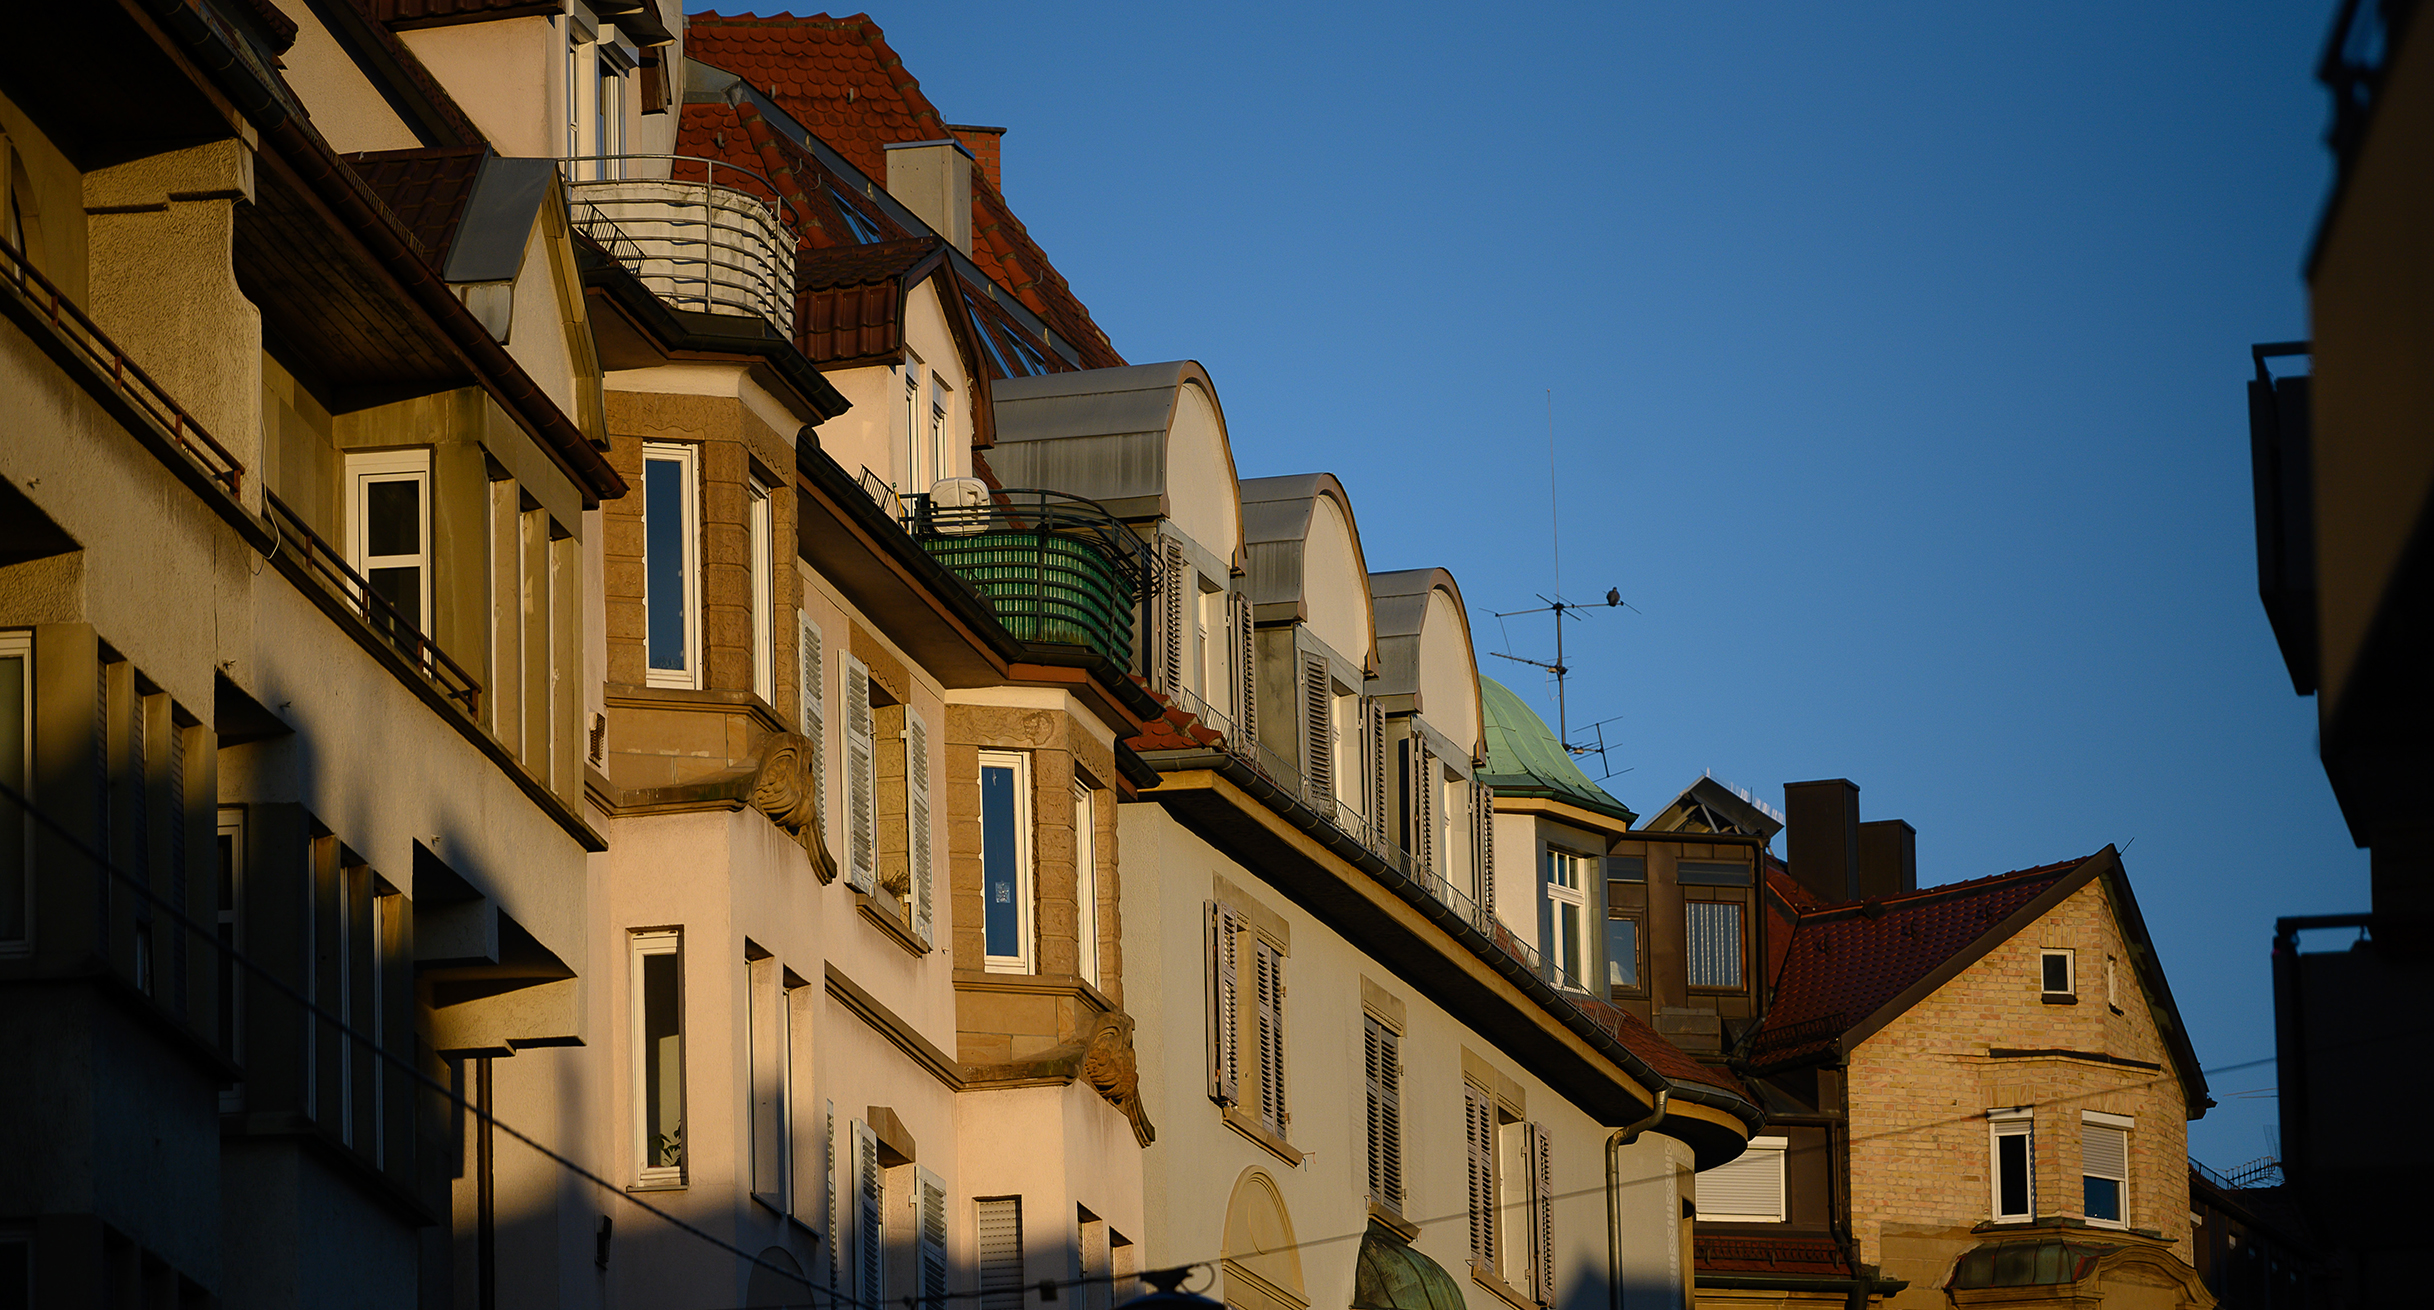 Häuser in Stuttgart werden von der Morgensonne beschienen. (Bild: picture alliance/Sebastian Gollnow/dpa)']